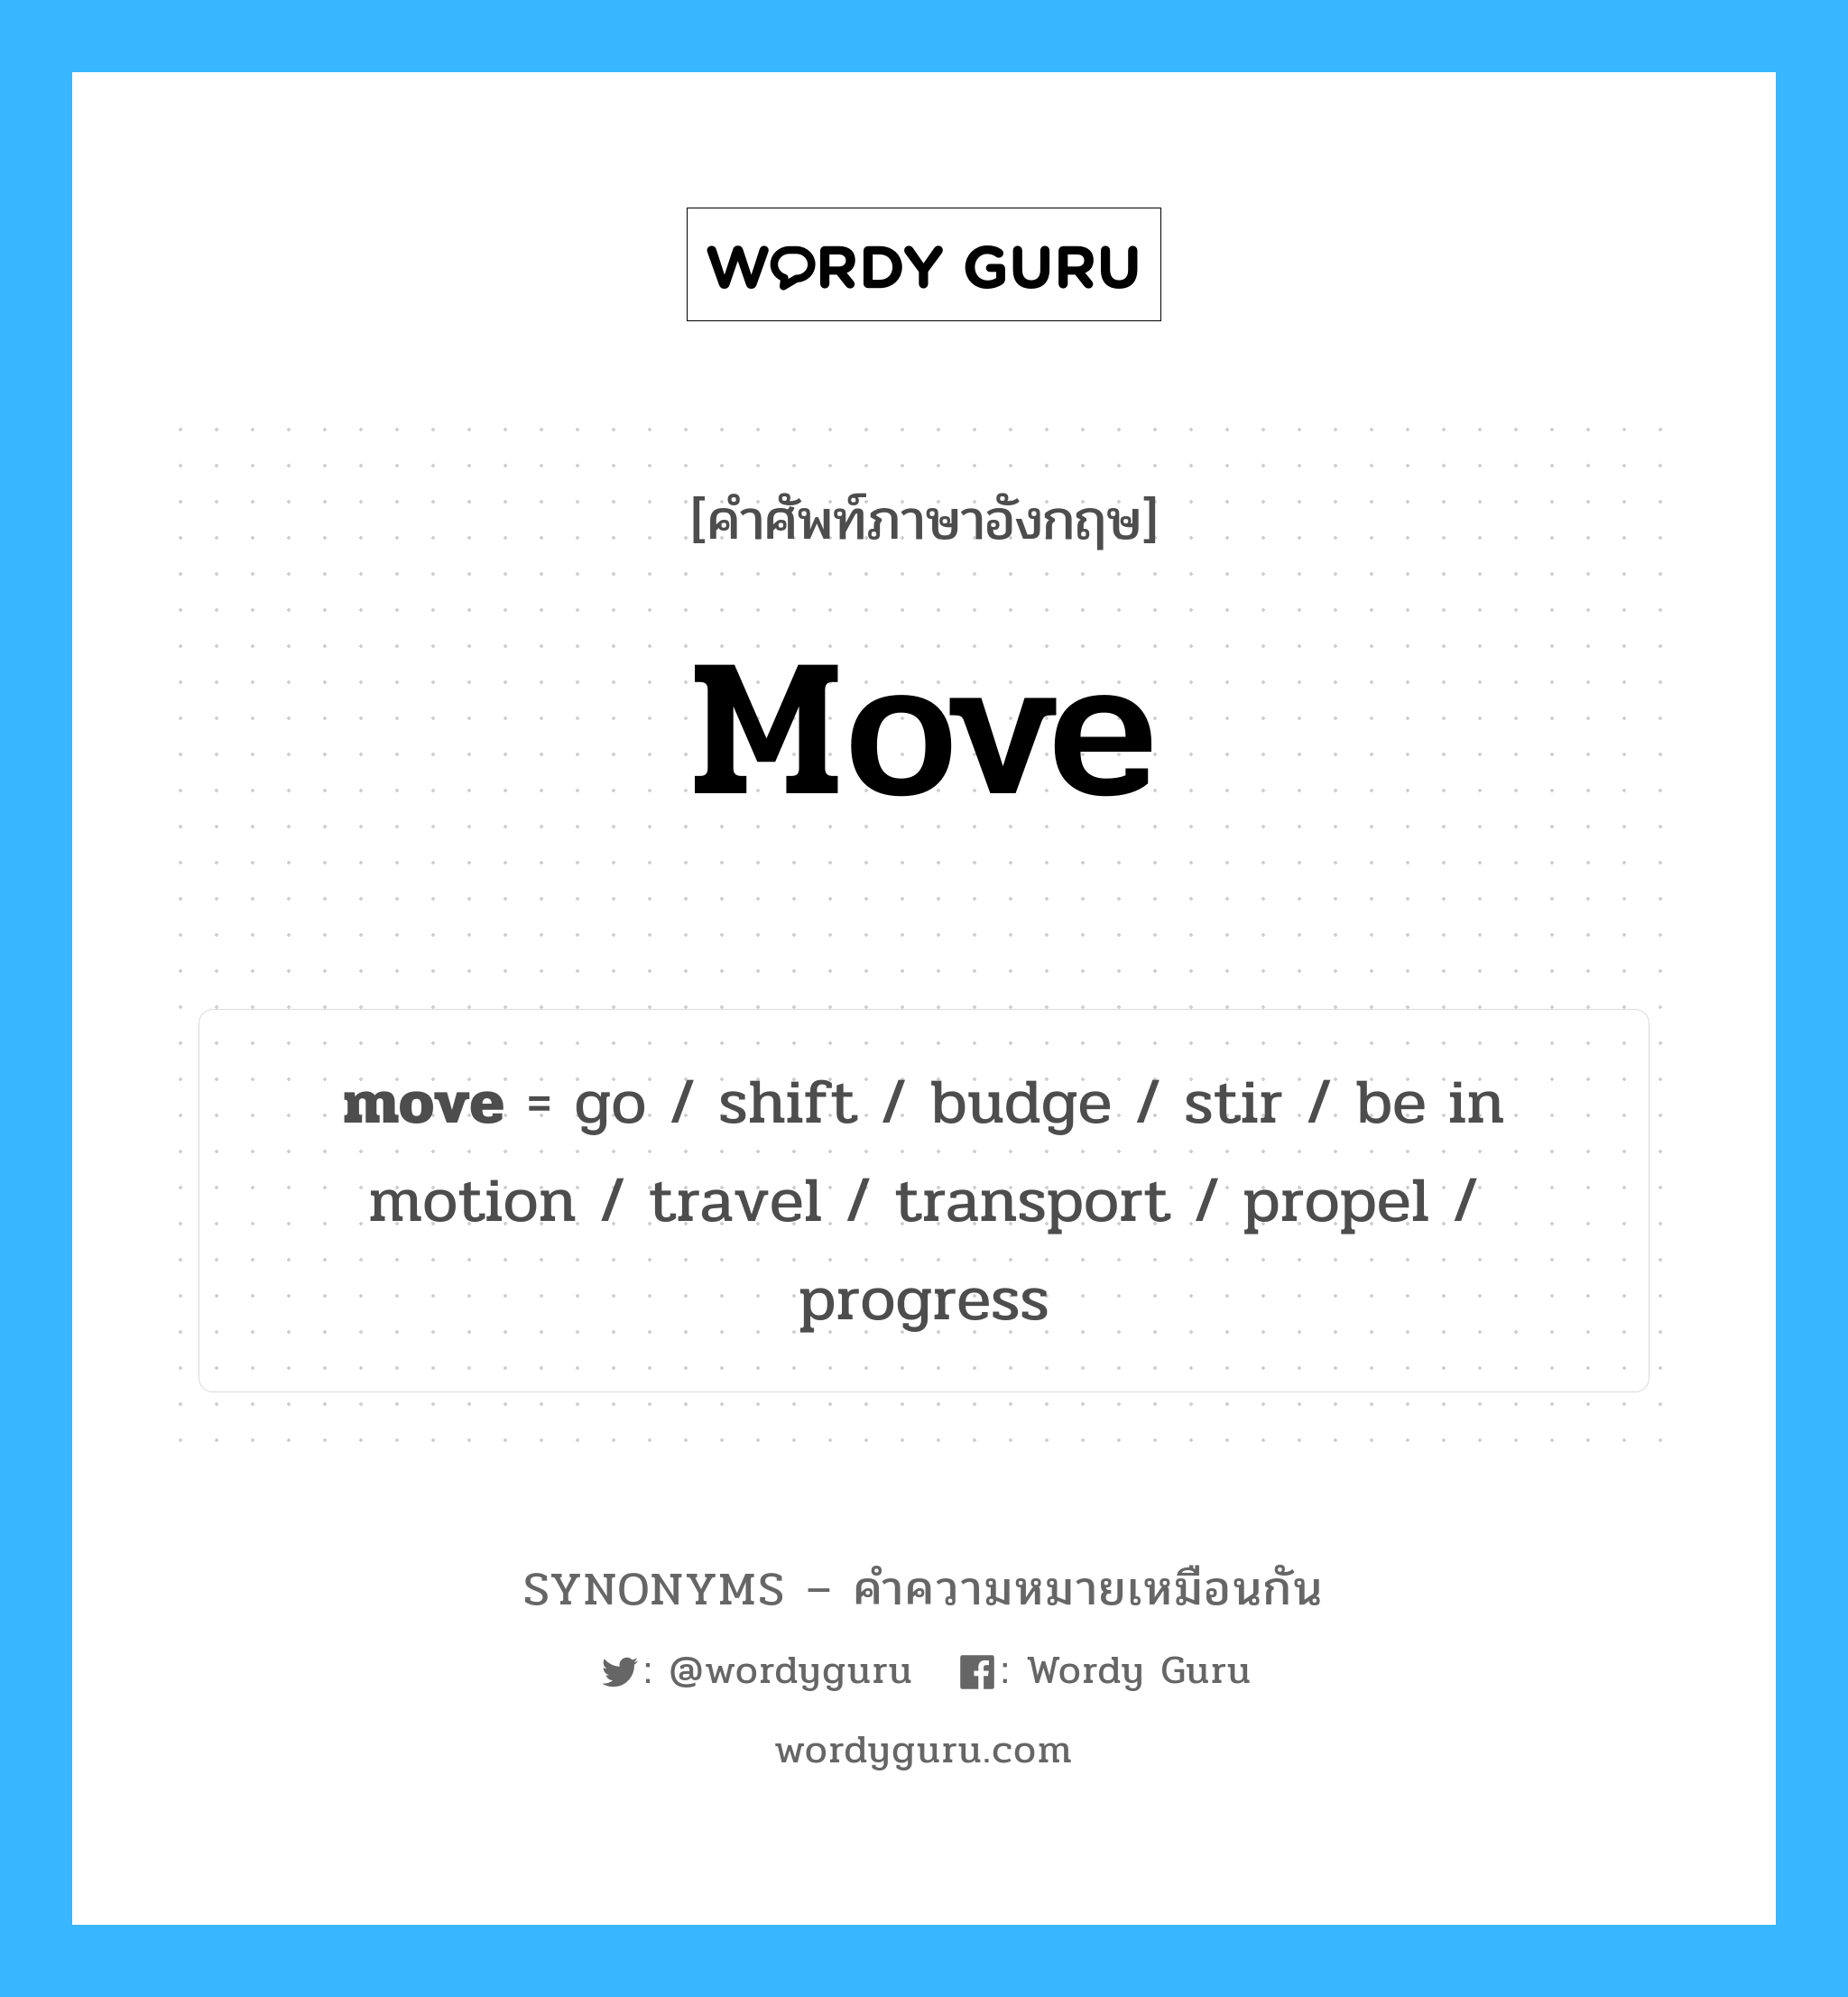 stir เป็นหนึ่งใน move และมีคำอื่น ๆ อีกดังนี้, คำศัพท์ภาษาอังกฤษ stir ความหมายคล้ายกันกับ move แปลว่า คนให้ละลาย หมวด move